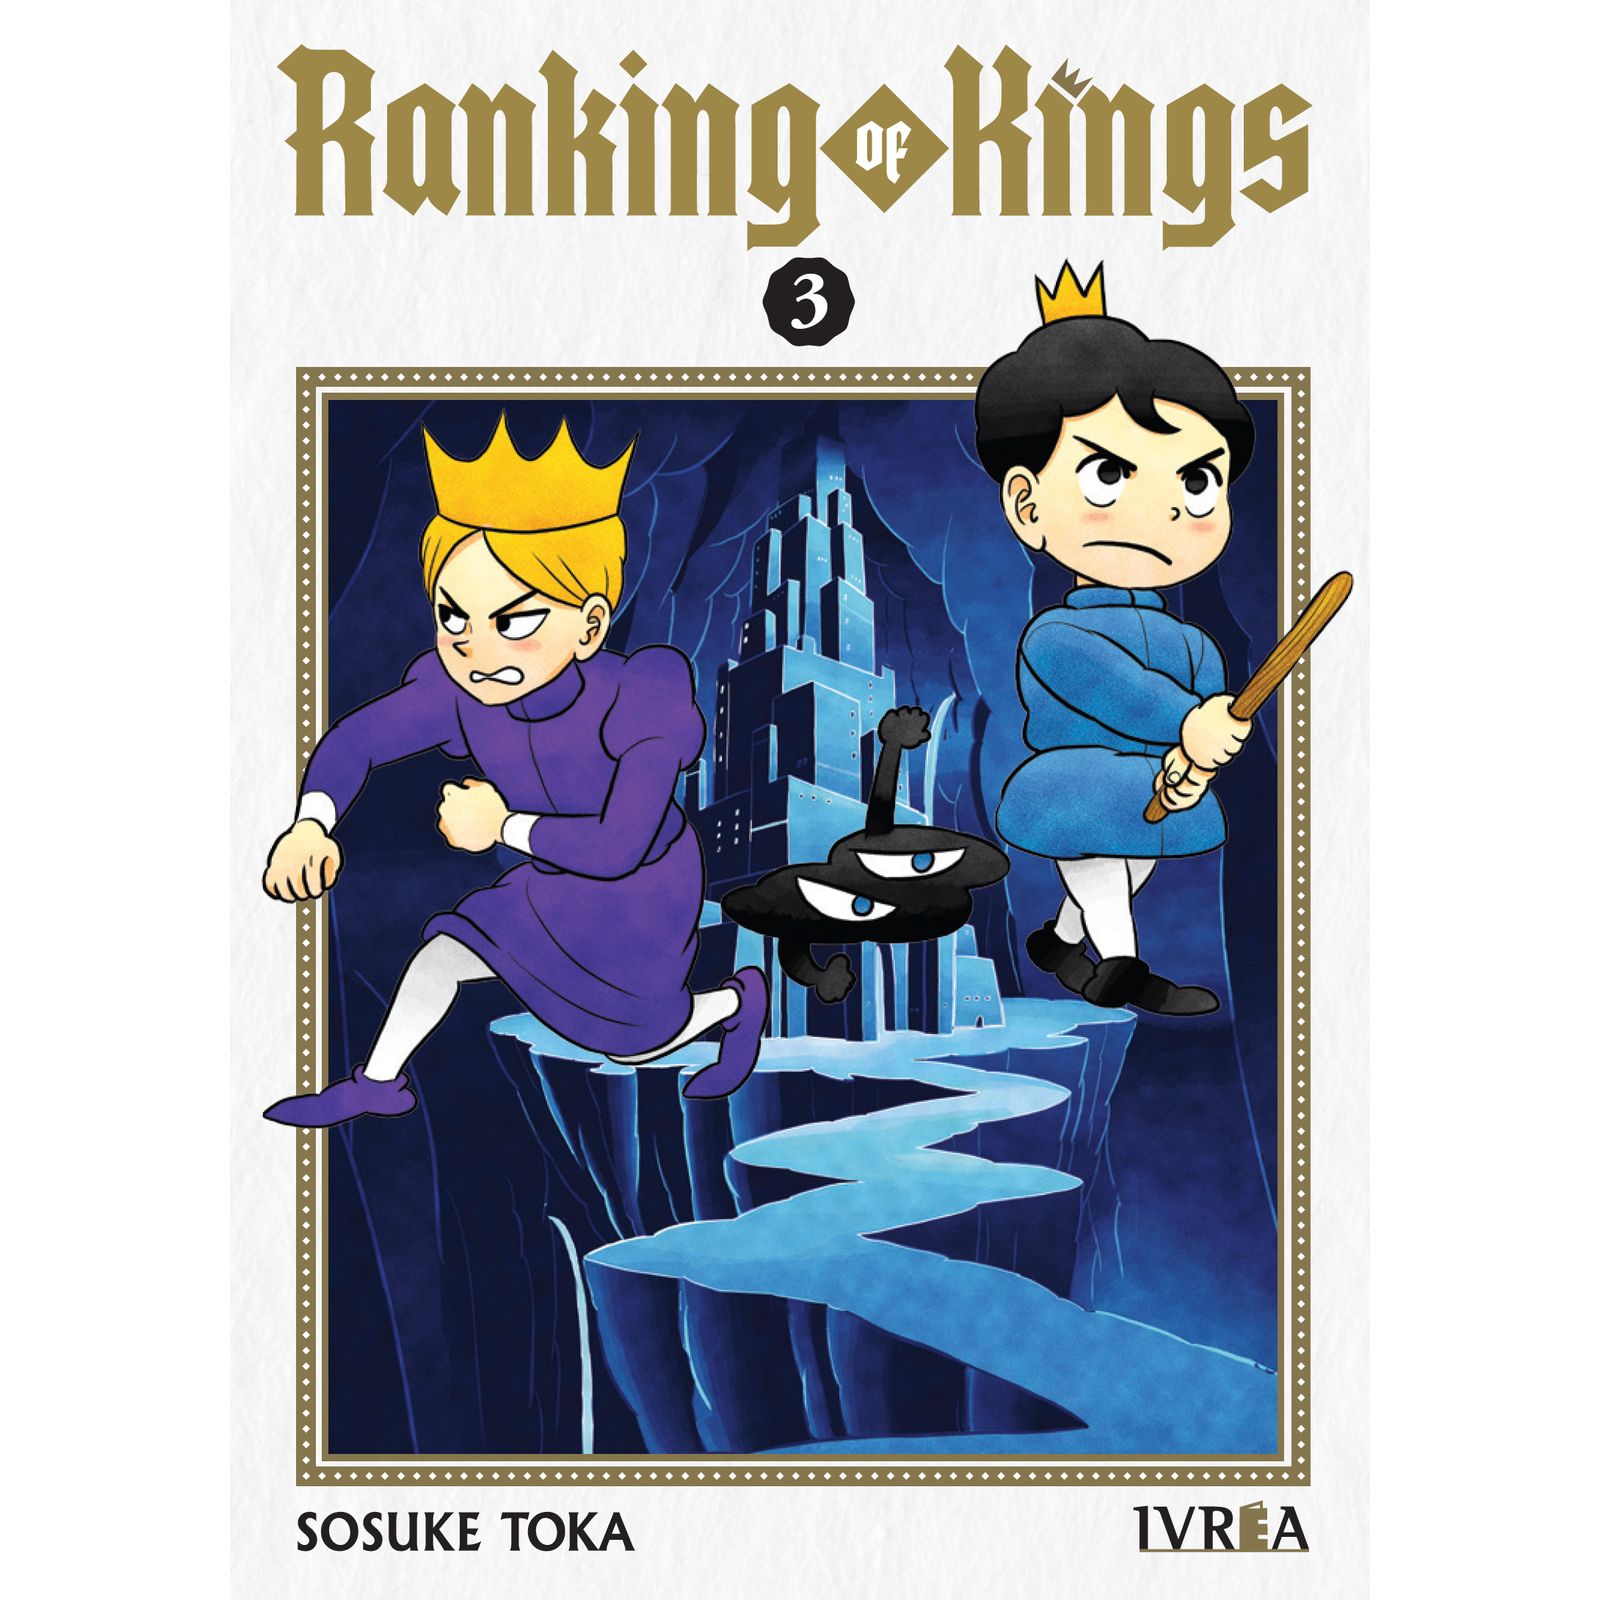 RANKING OF KINGS 03